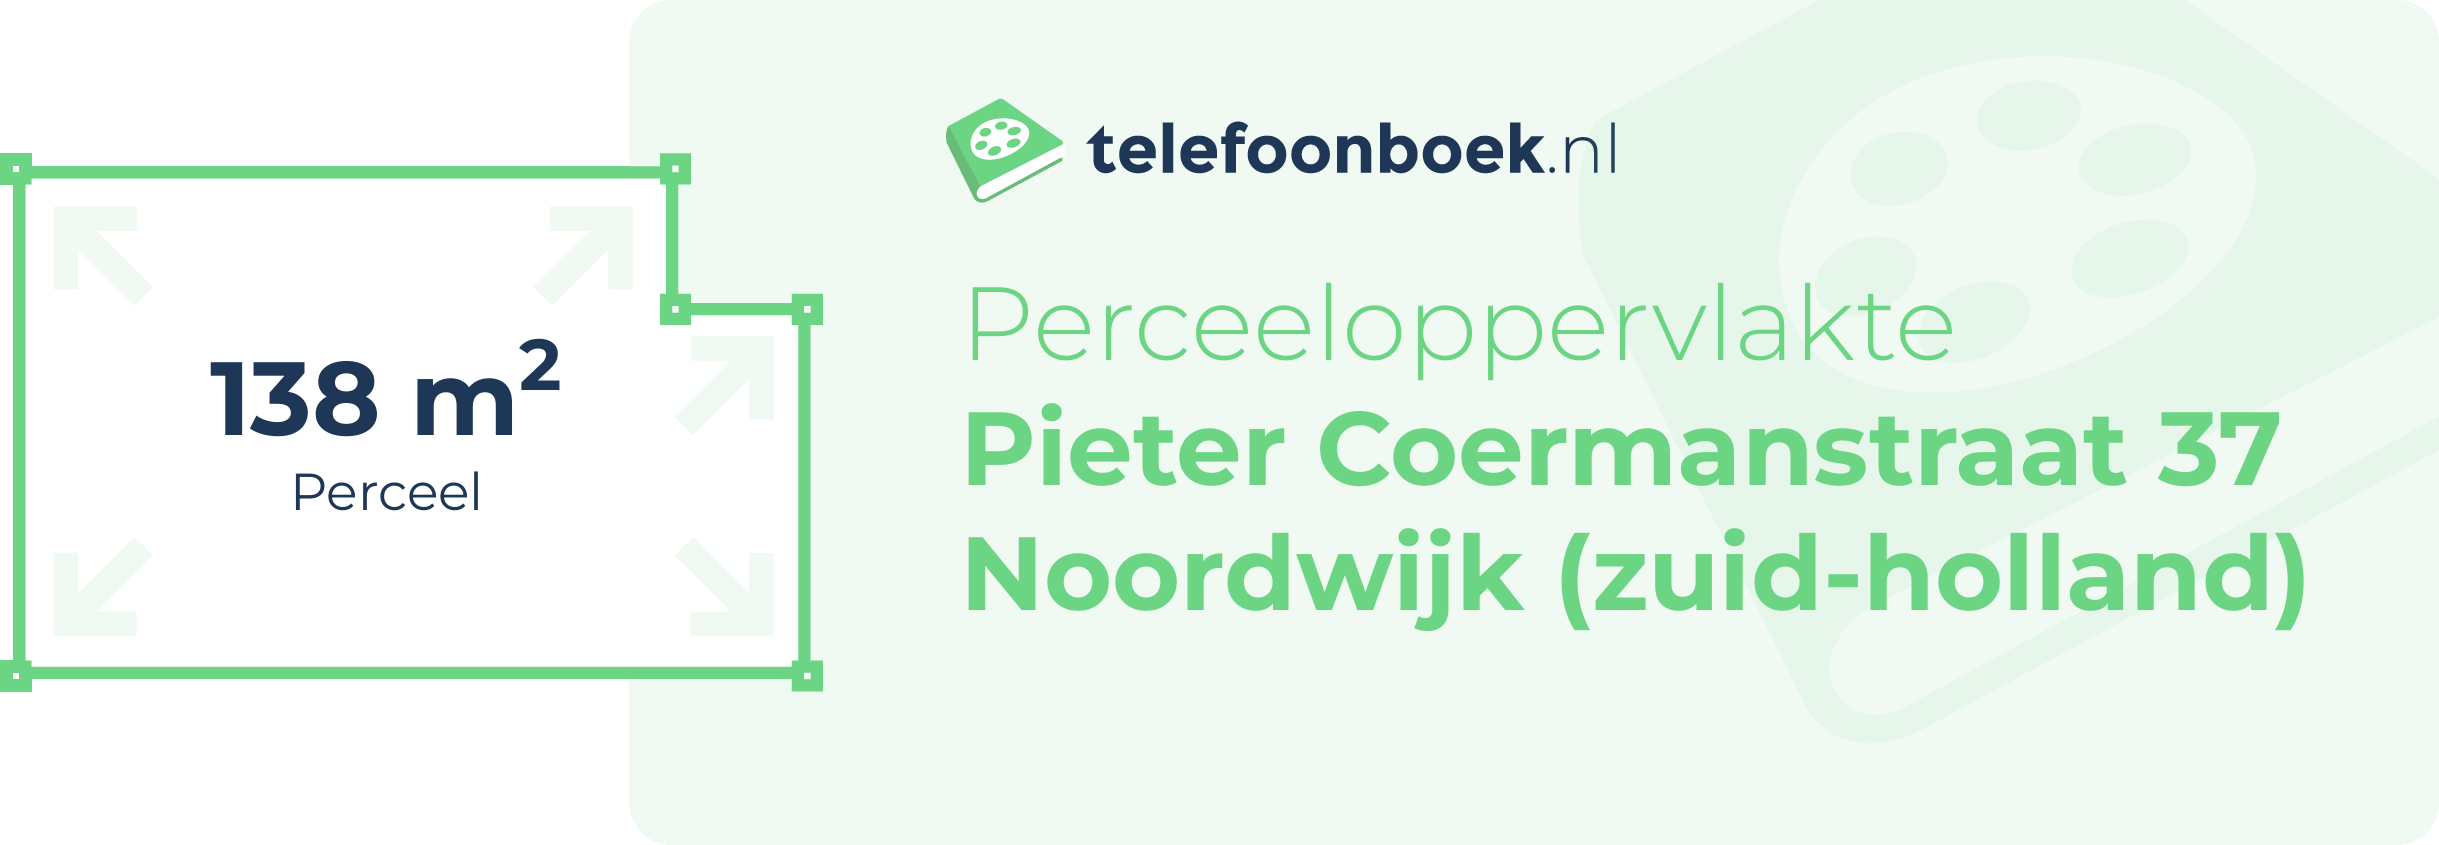 Perceeloppervlakte Pieter Coermanstraat 37 Noordwijk (Zuid-Holland)